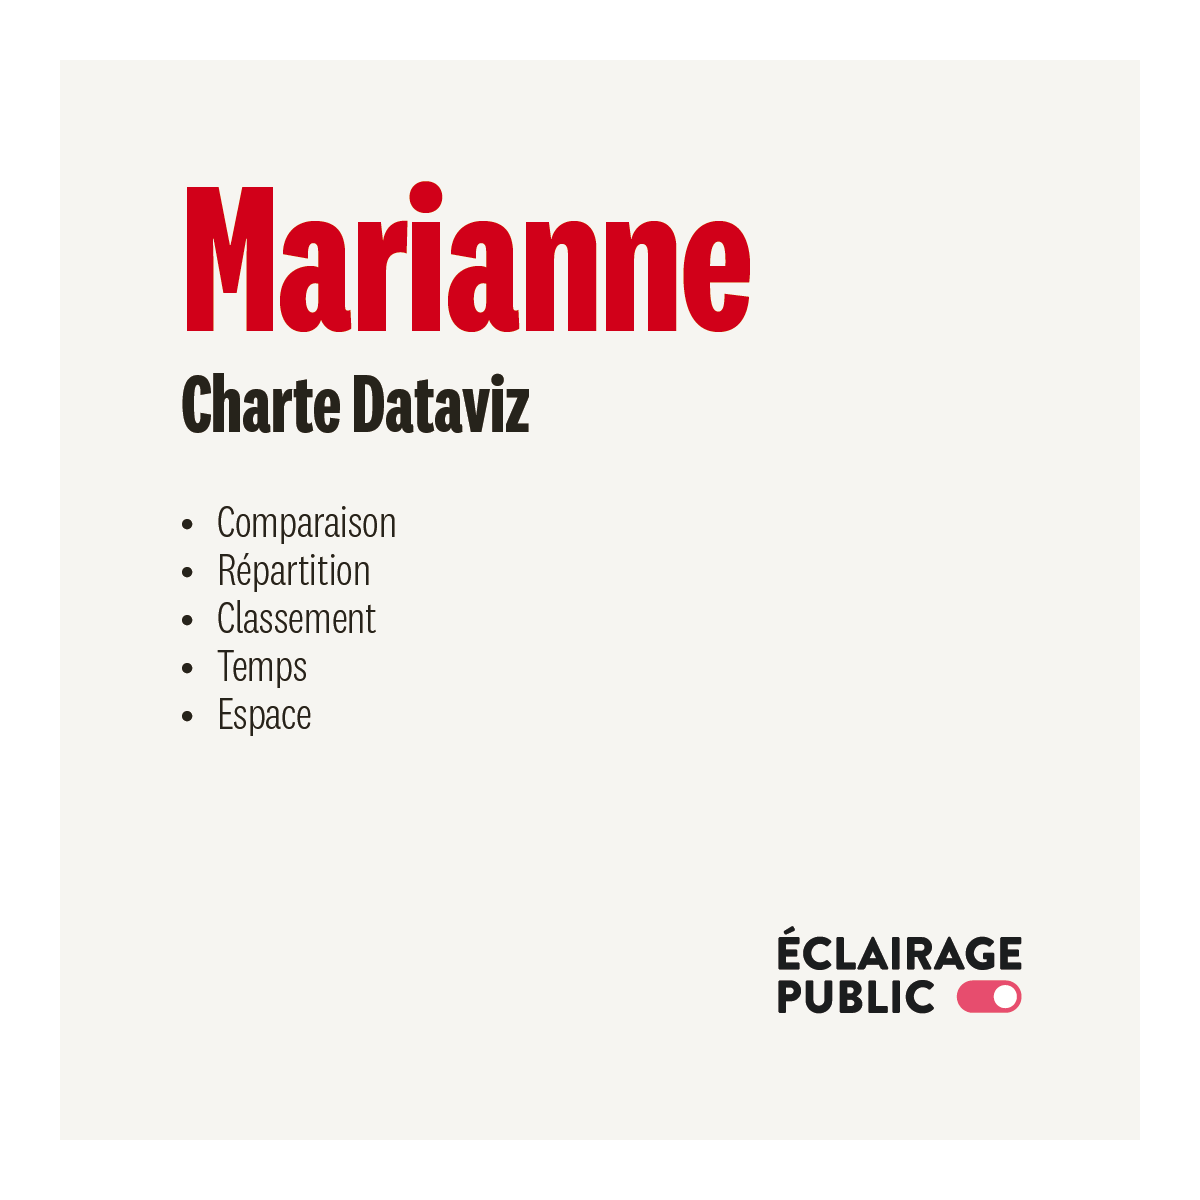 Charte-Dataviz-Marianne